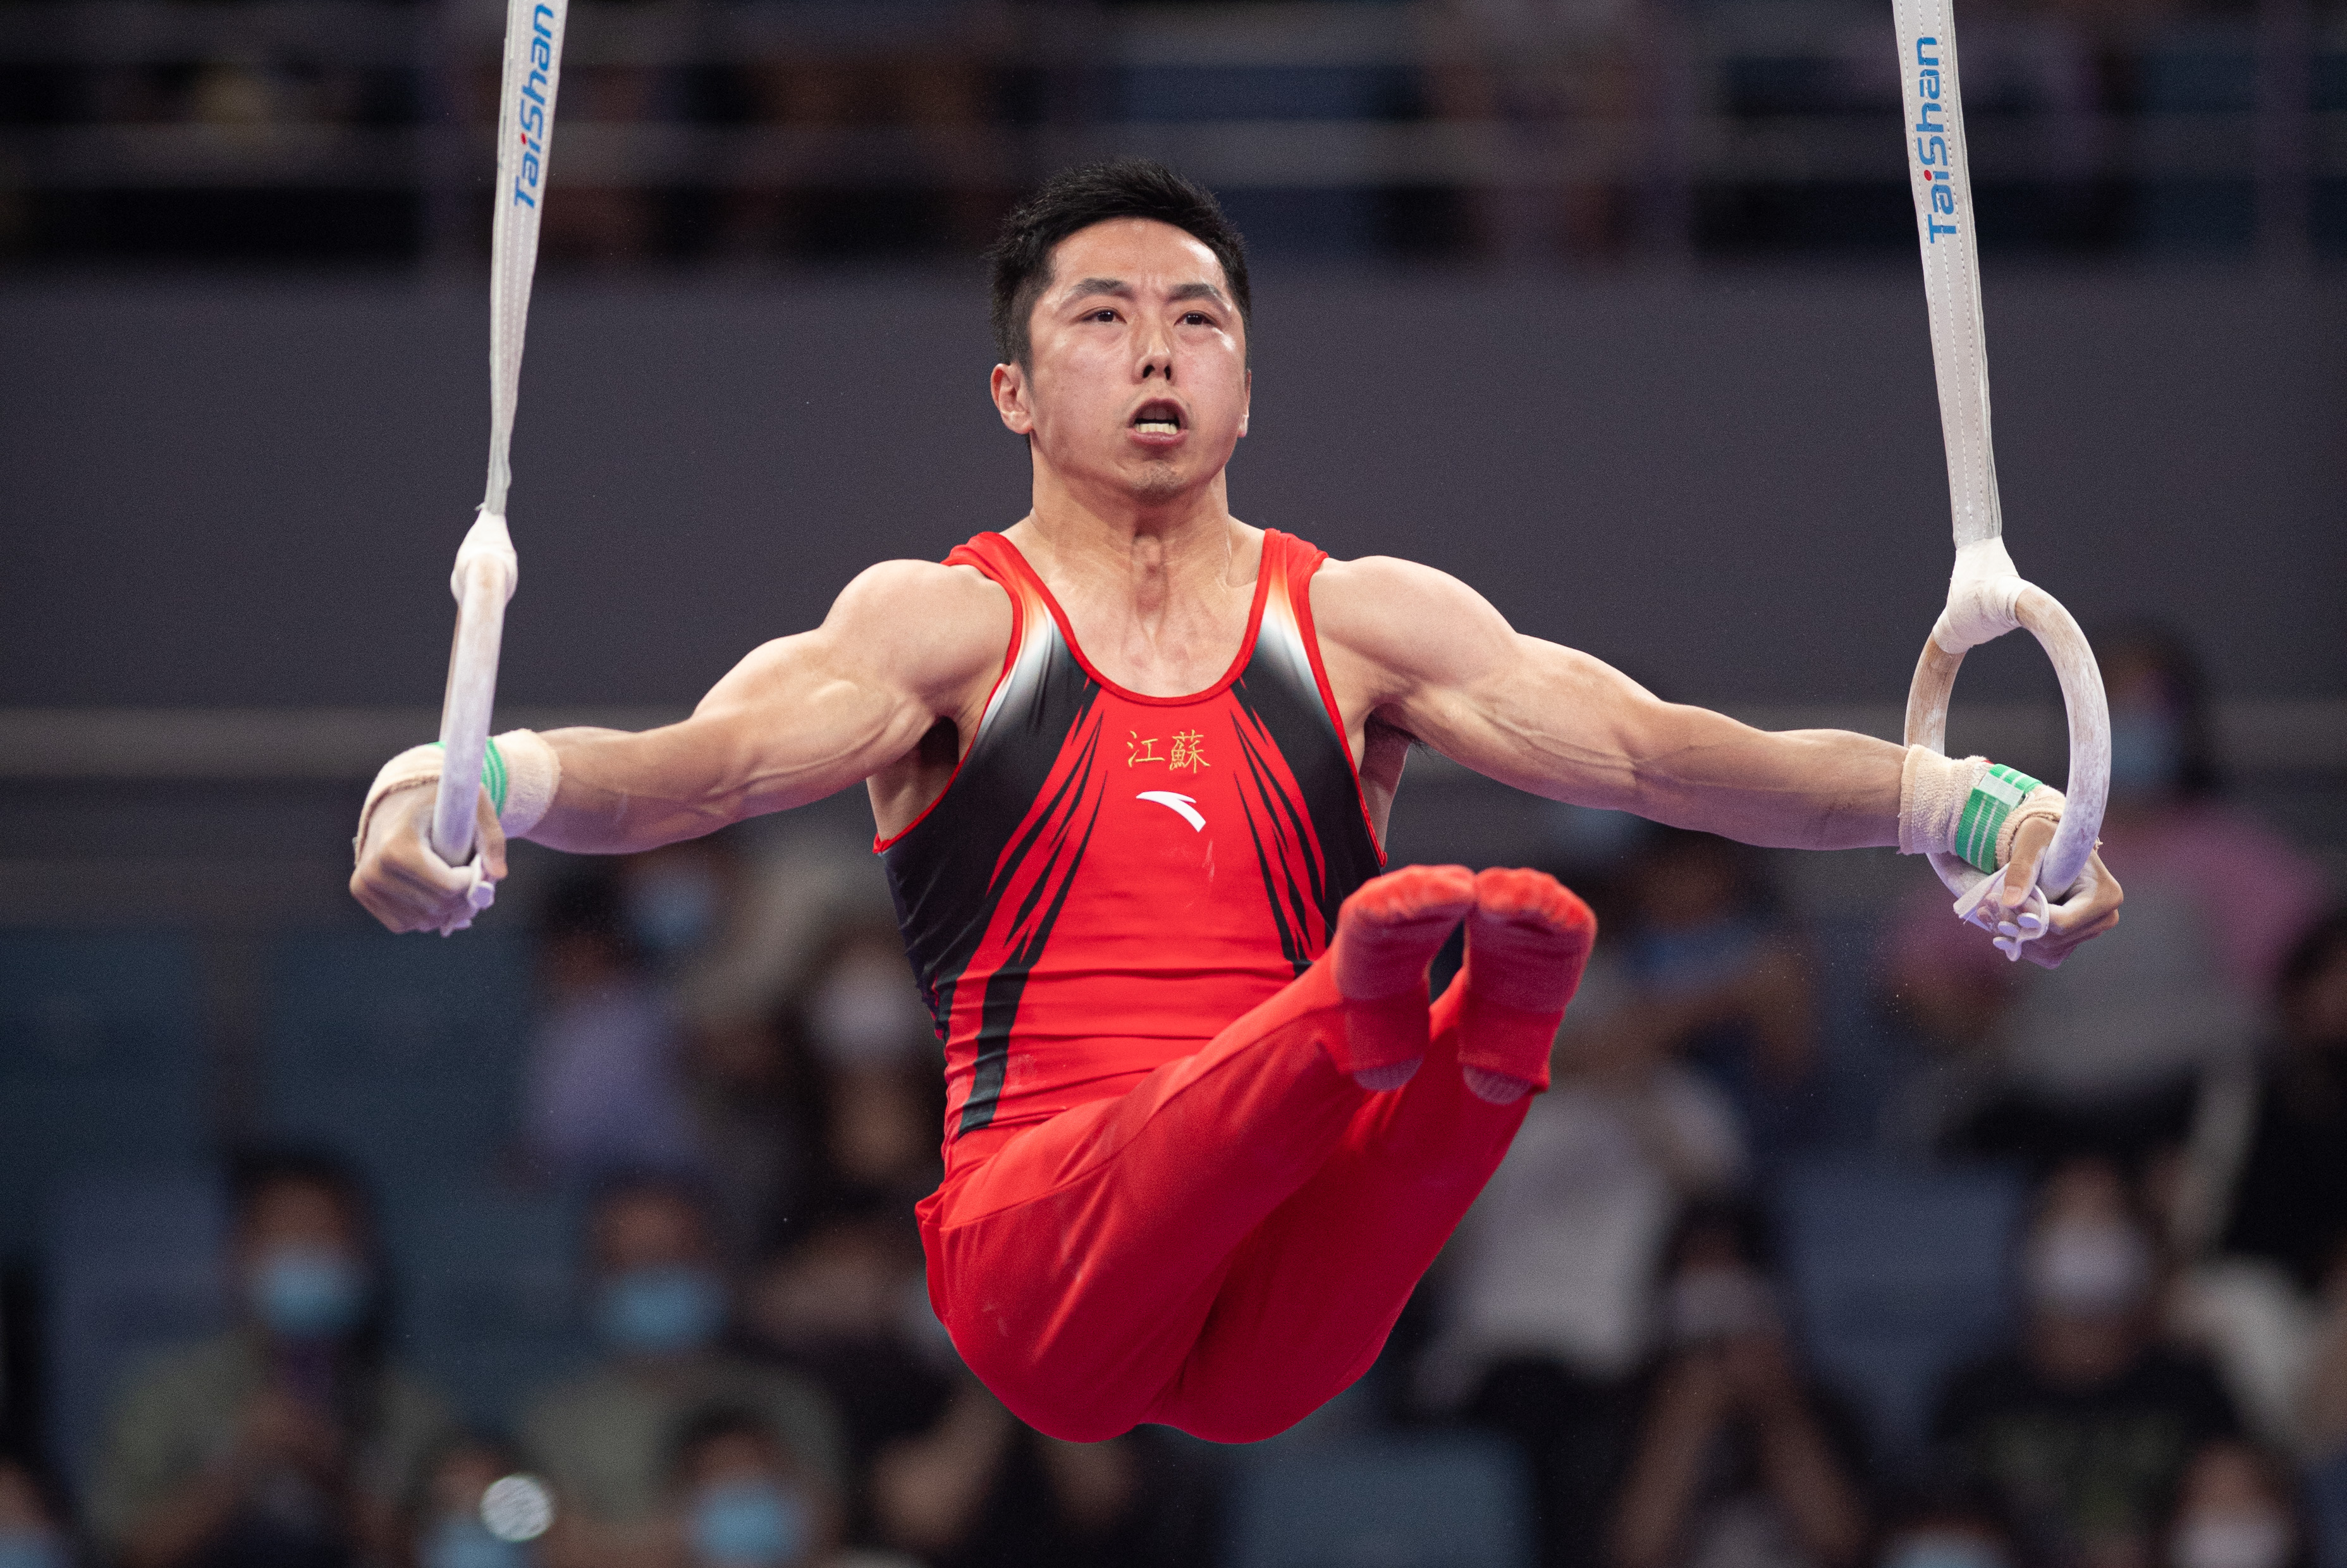 全国体操锦标赛 | 男子吊环决赛瞬间 展现力量之美